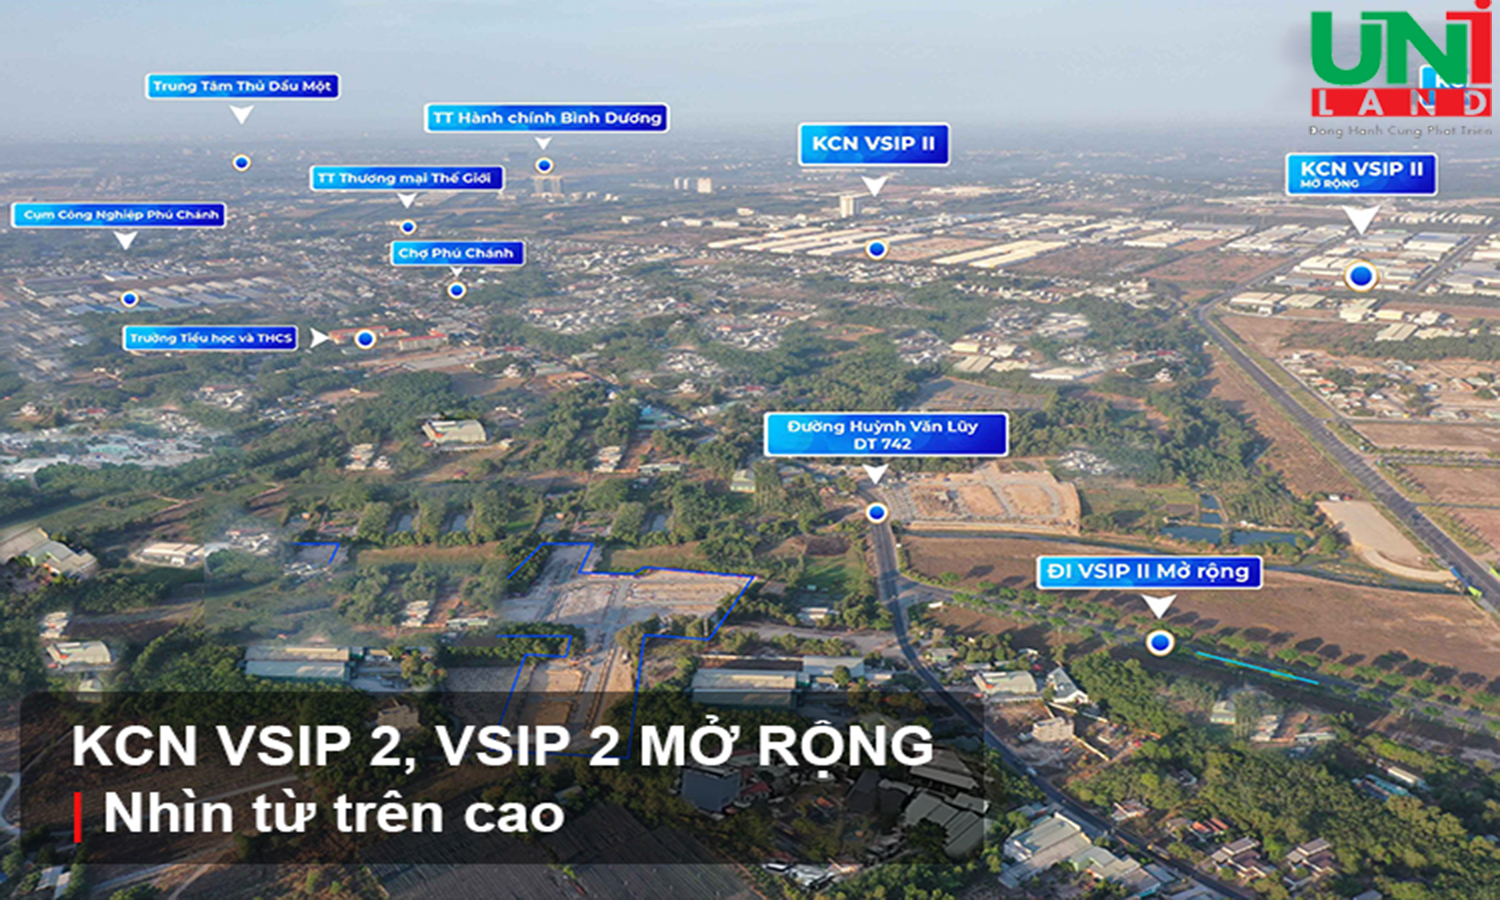 Hình ảnh vệ tinh KCN Vsip 2, Vsip 2 Mở rộng và tiện ích liền kề dự án Khu nhà ở Bình Minh